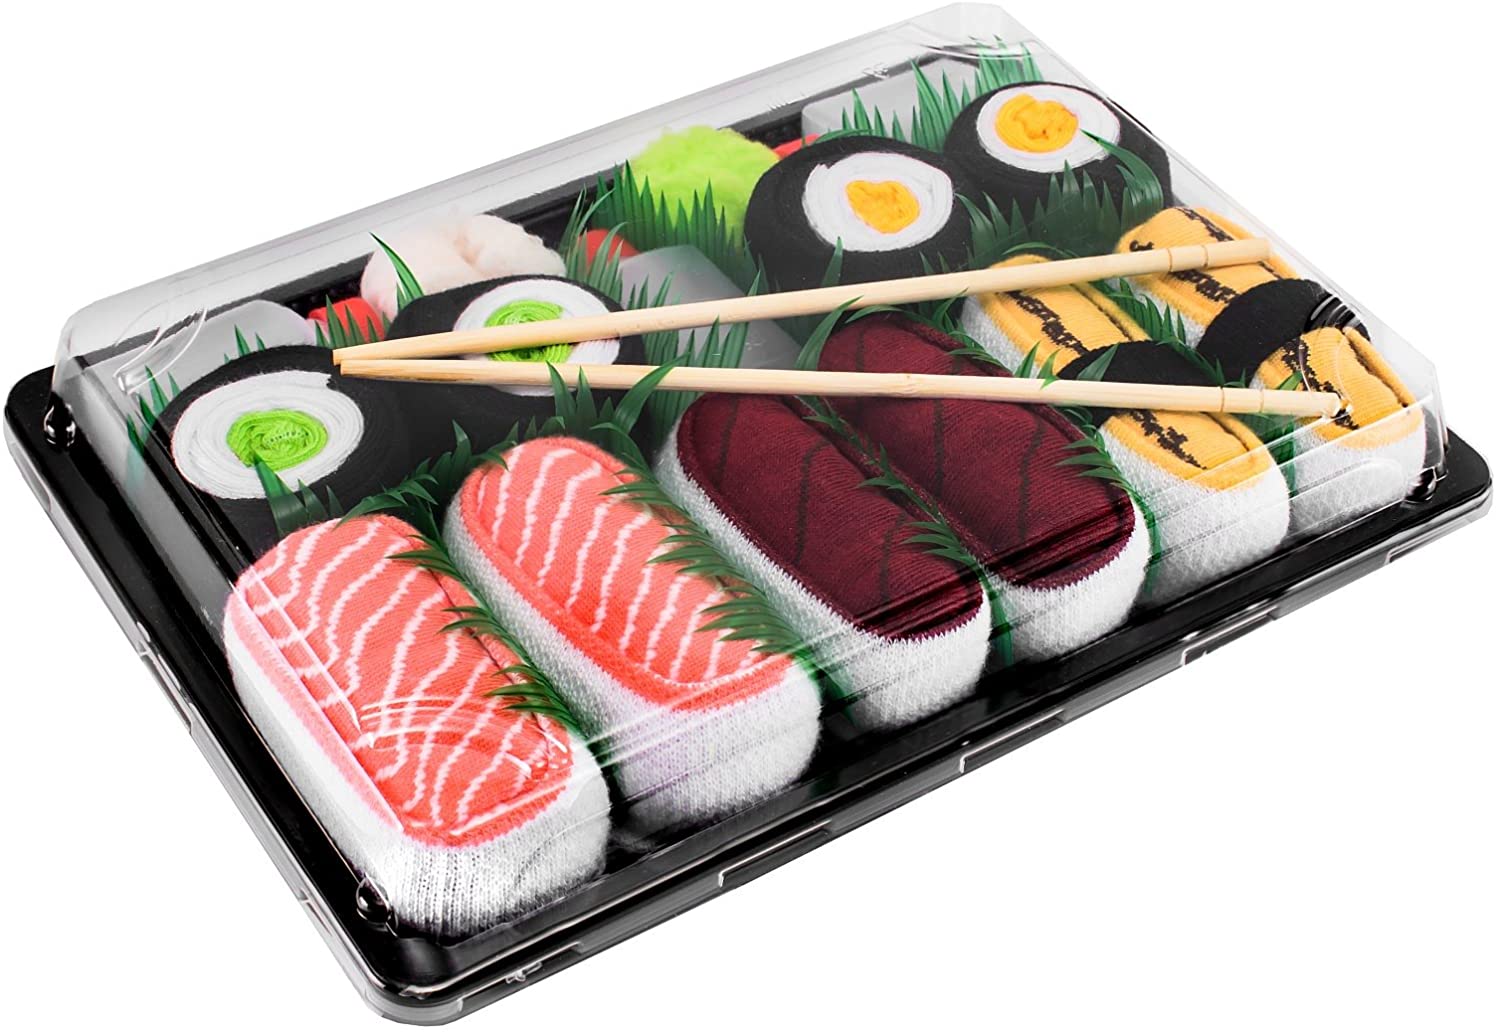 Rainbow Socks - Damen Herren - Sushi Socken Lachs Tamago Thunfisch 2x Maki 5 Paar